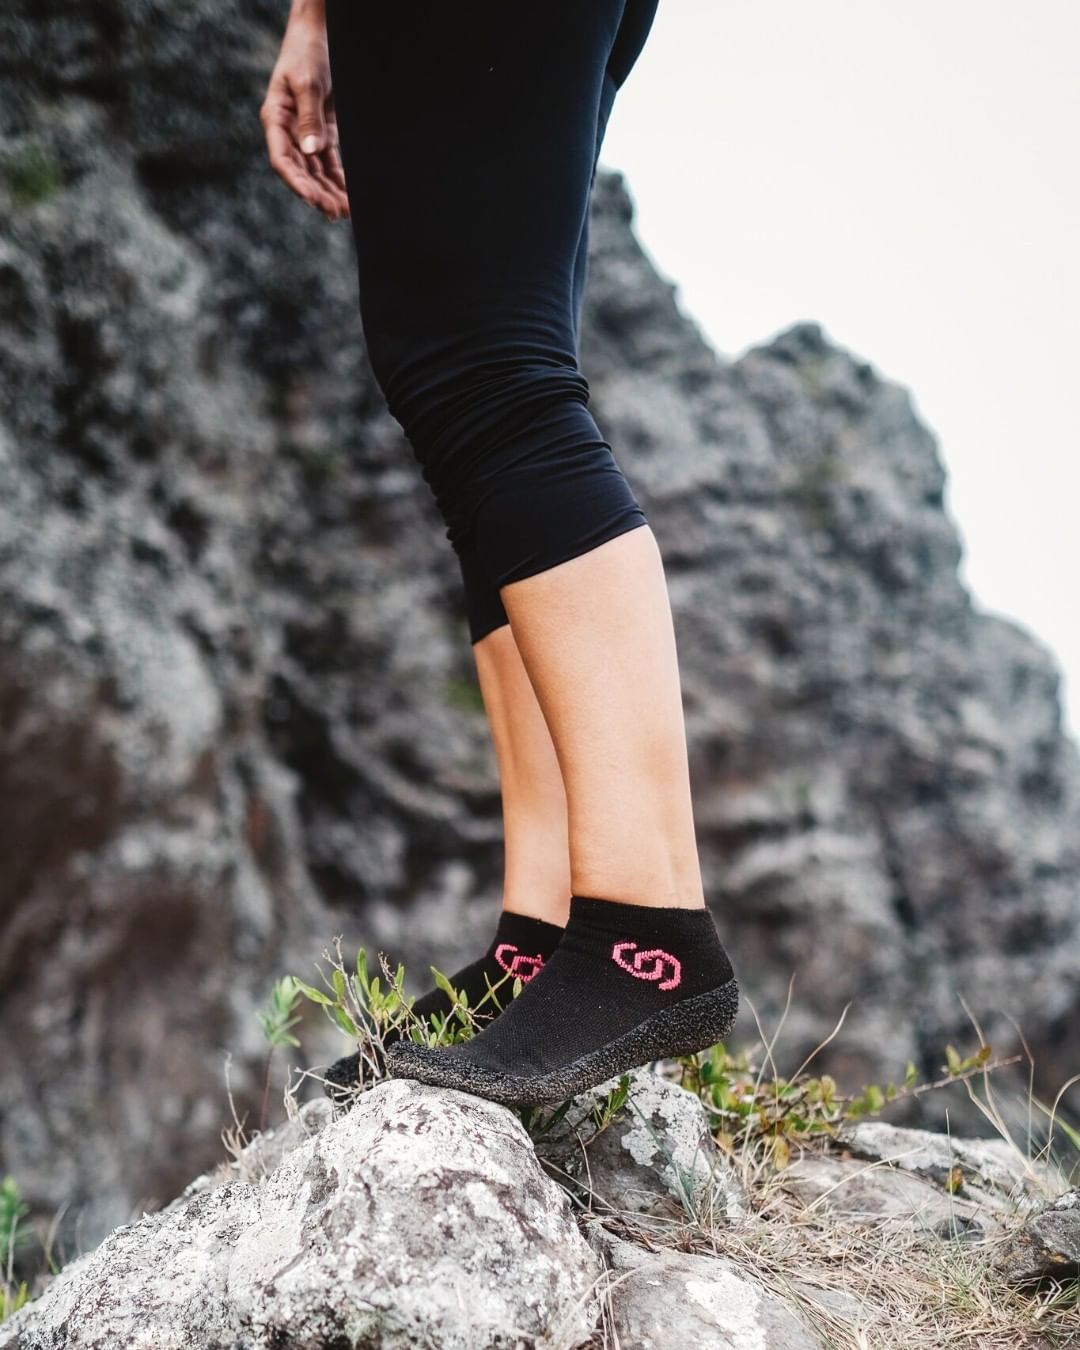 Zapatillas minimalistas o correr descalzo: ¿Sabes qué es el running barefoot ?